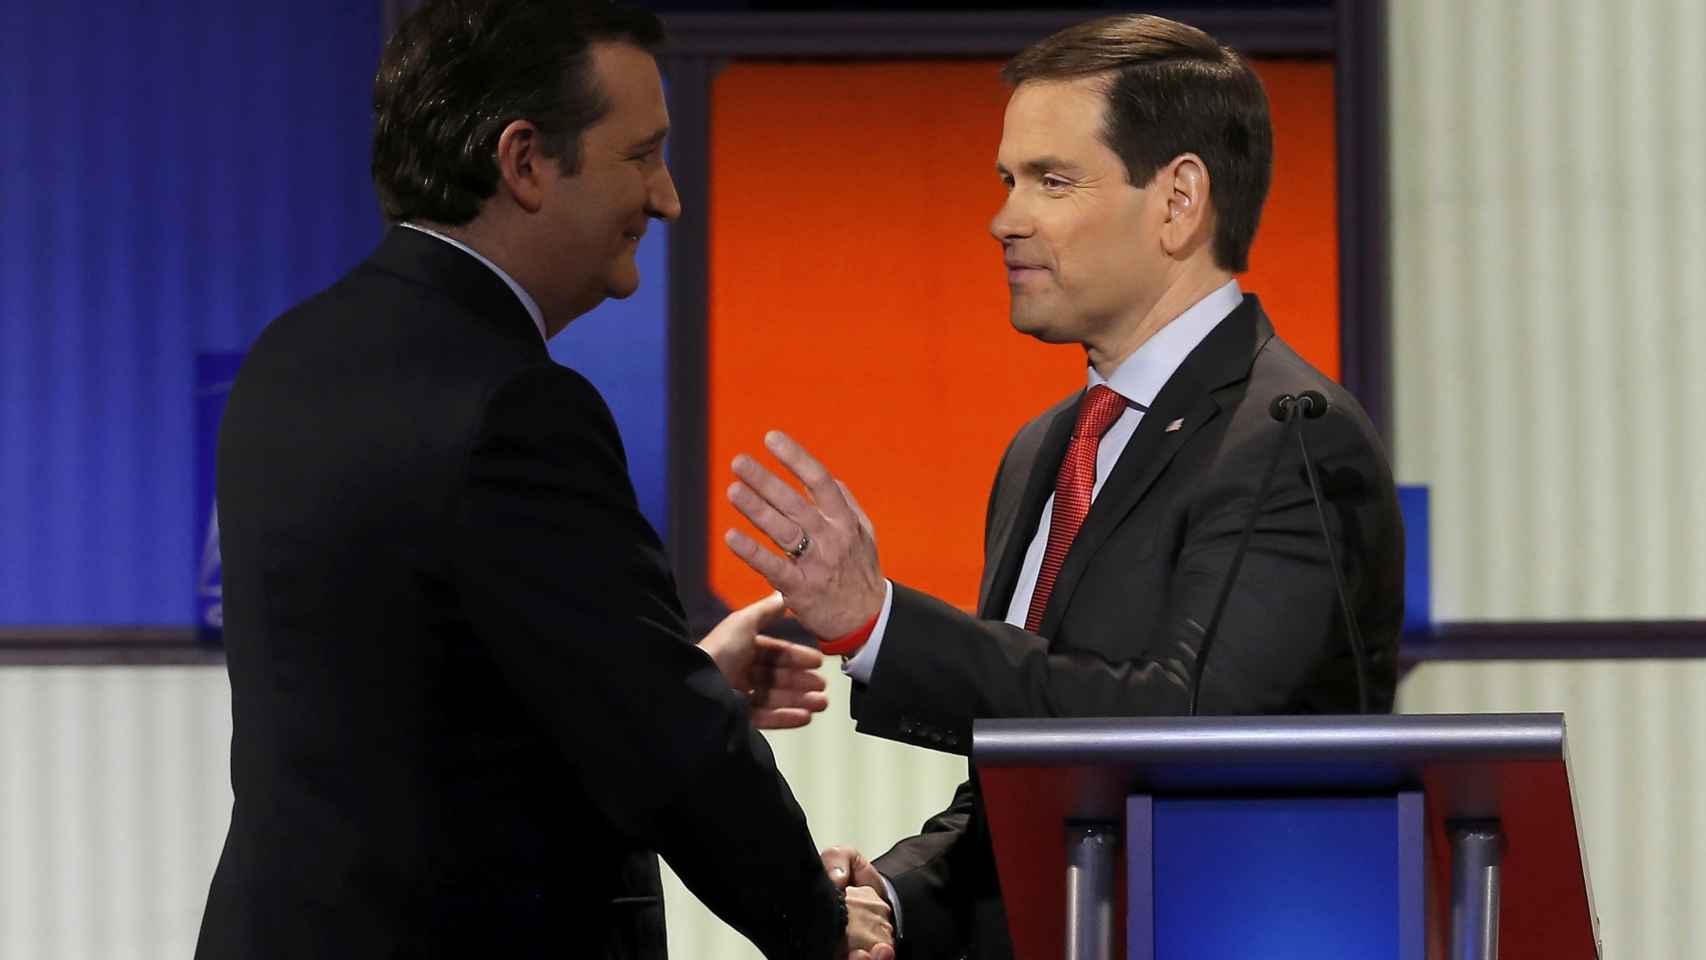 Cruz y Rubio se aprietan las manos al terminar el debate.